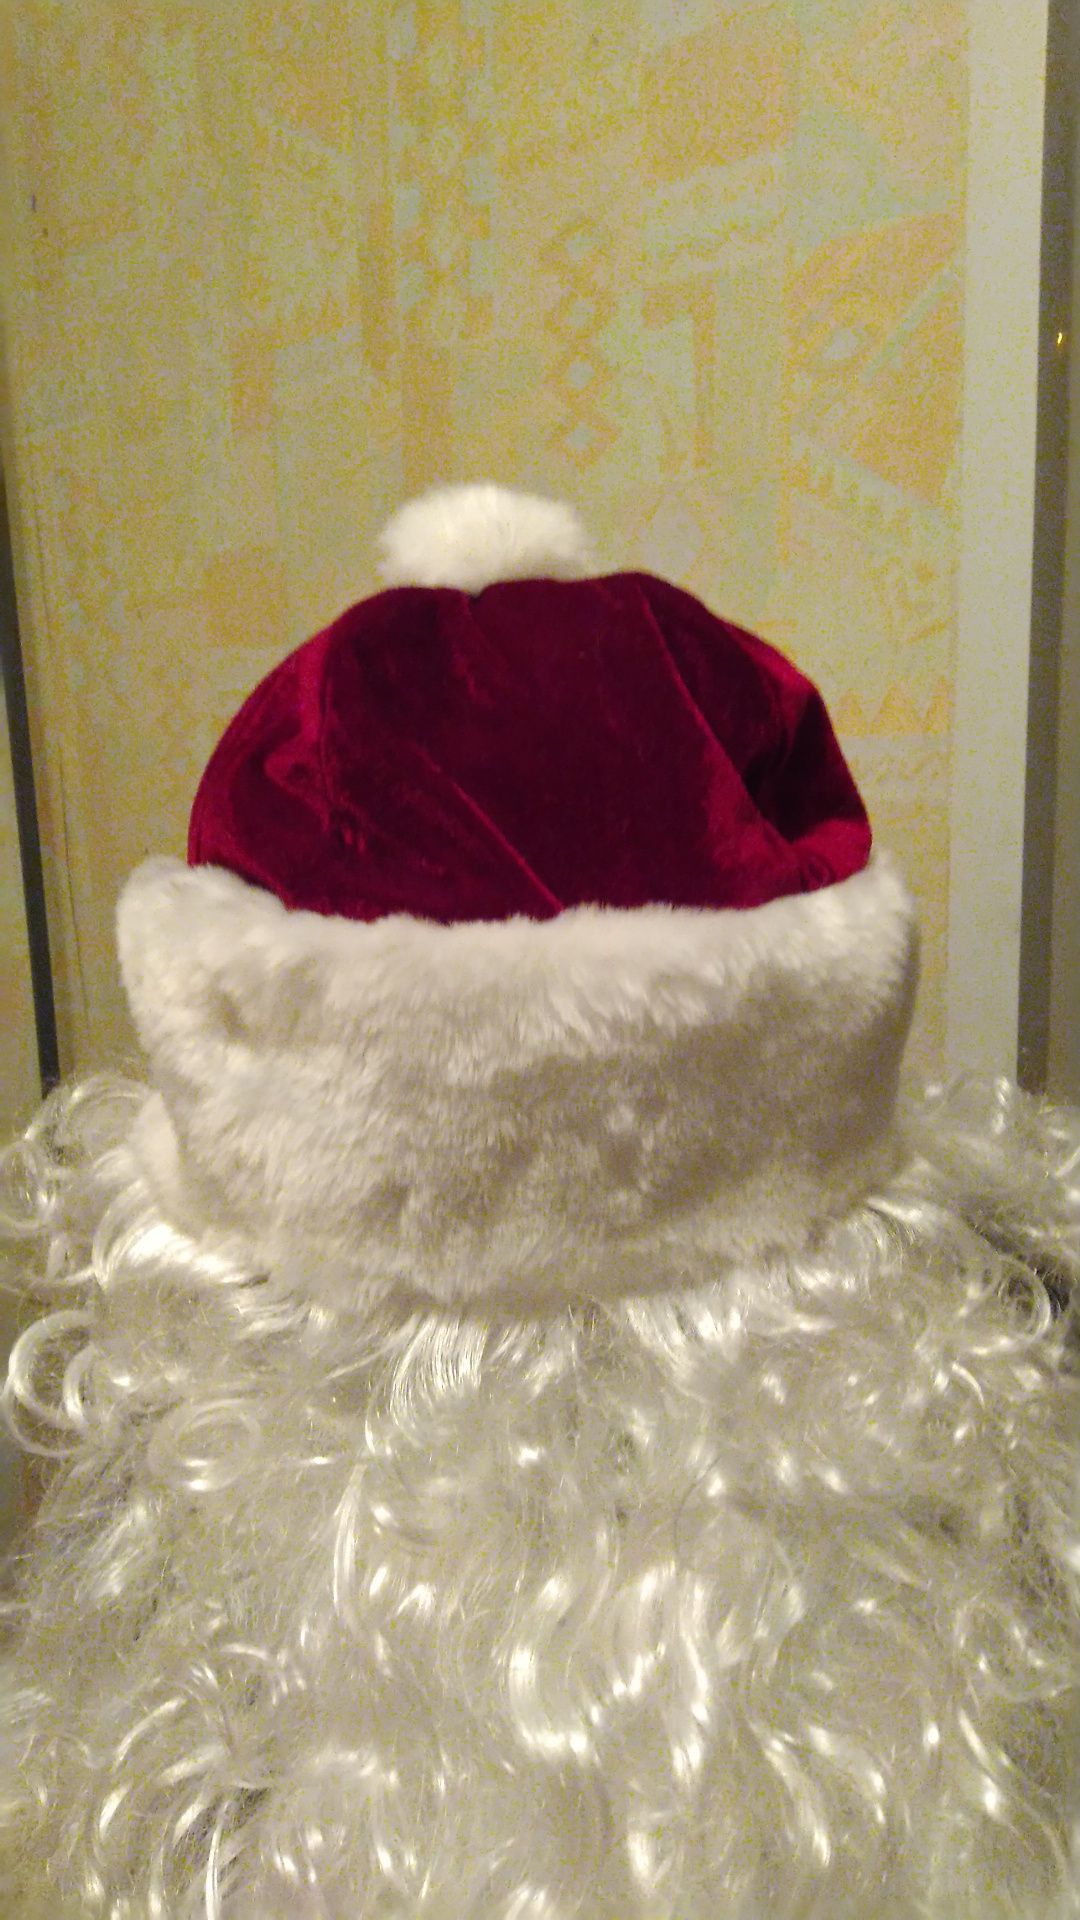 Продам борода+шапка с париком для Санта Клауса,Св.Николая,Деда Мороза.